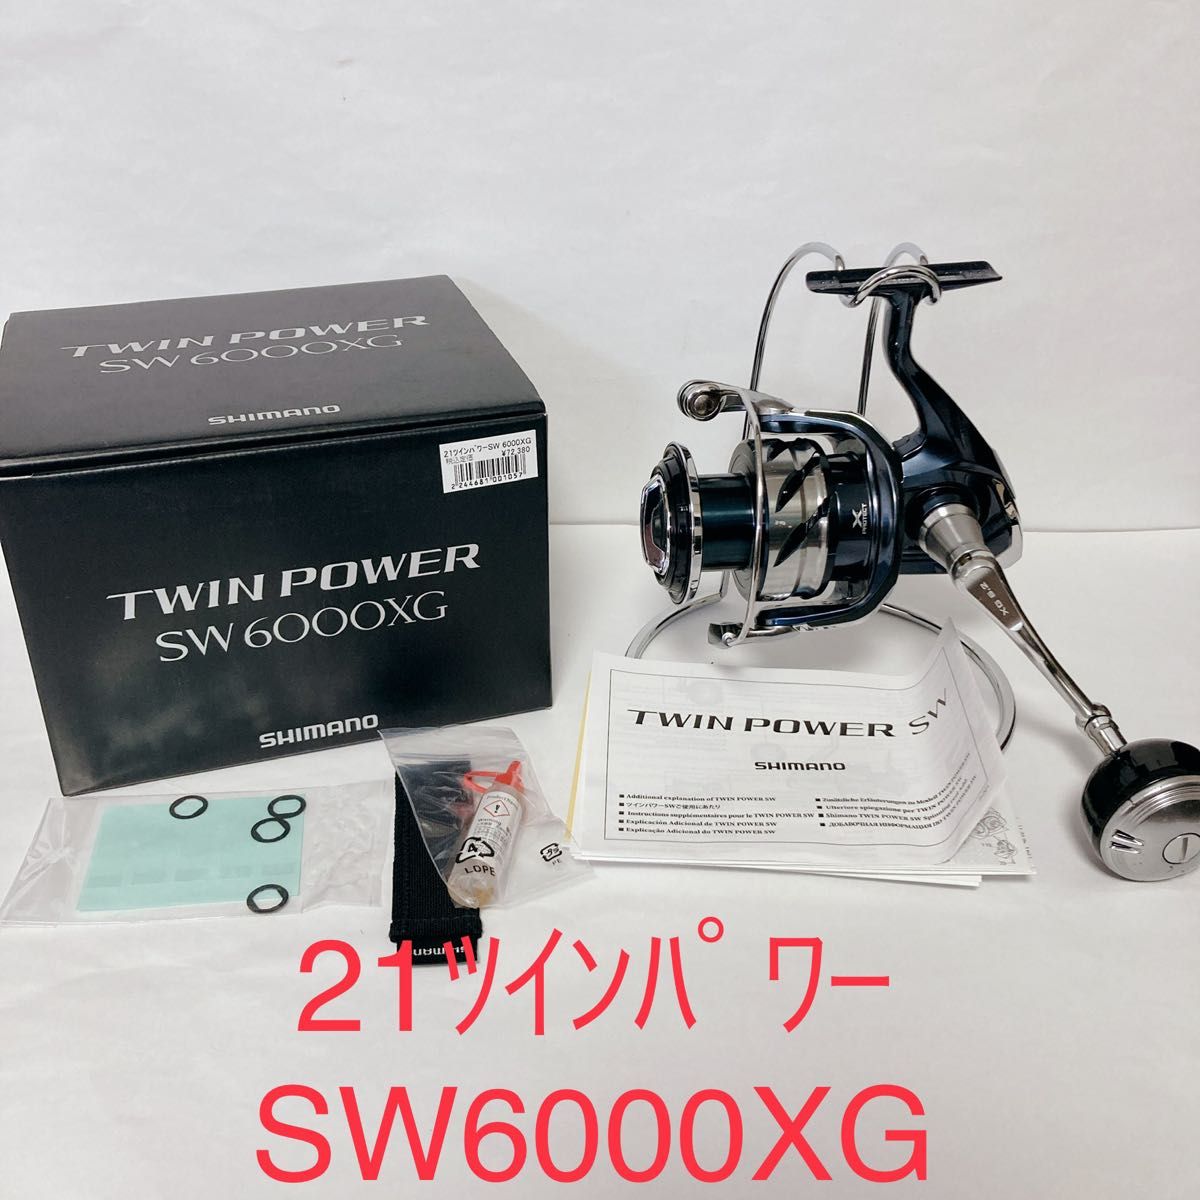 シマノ スピニングリール ツインパワー SW 6000XG 21年モデル 